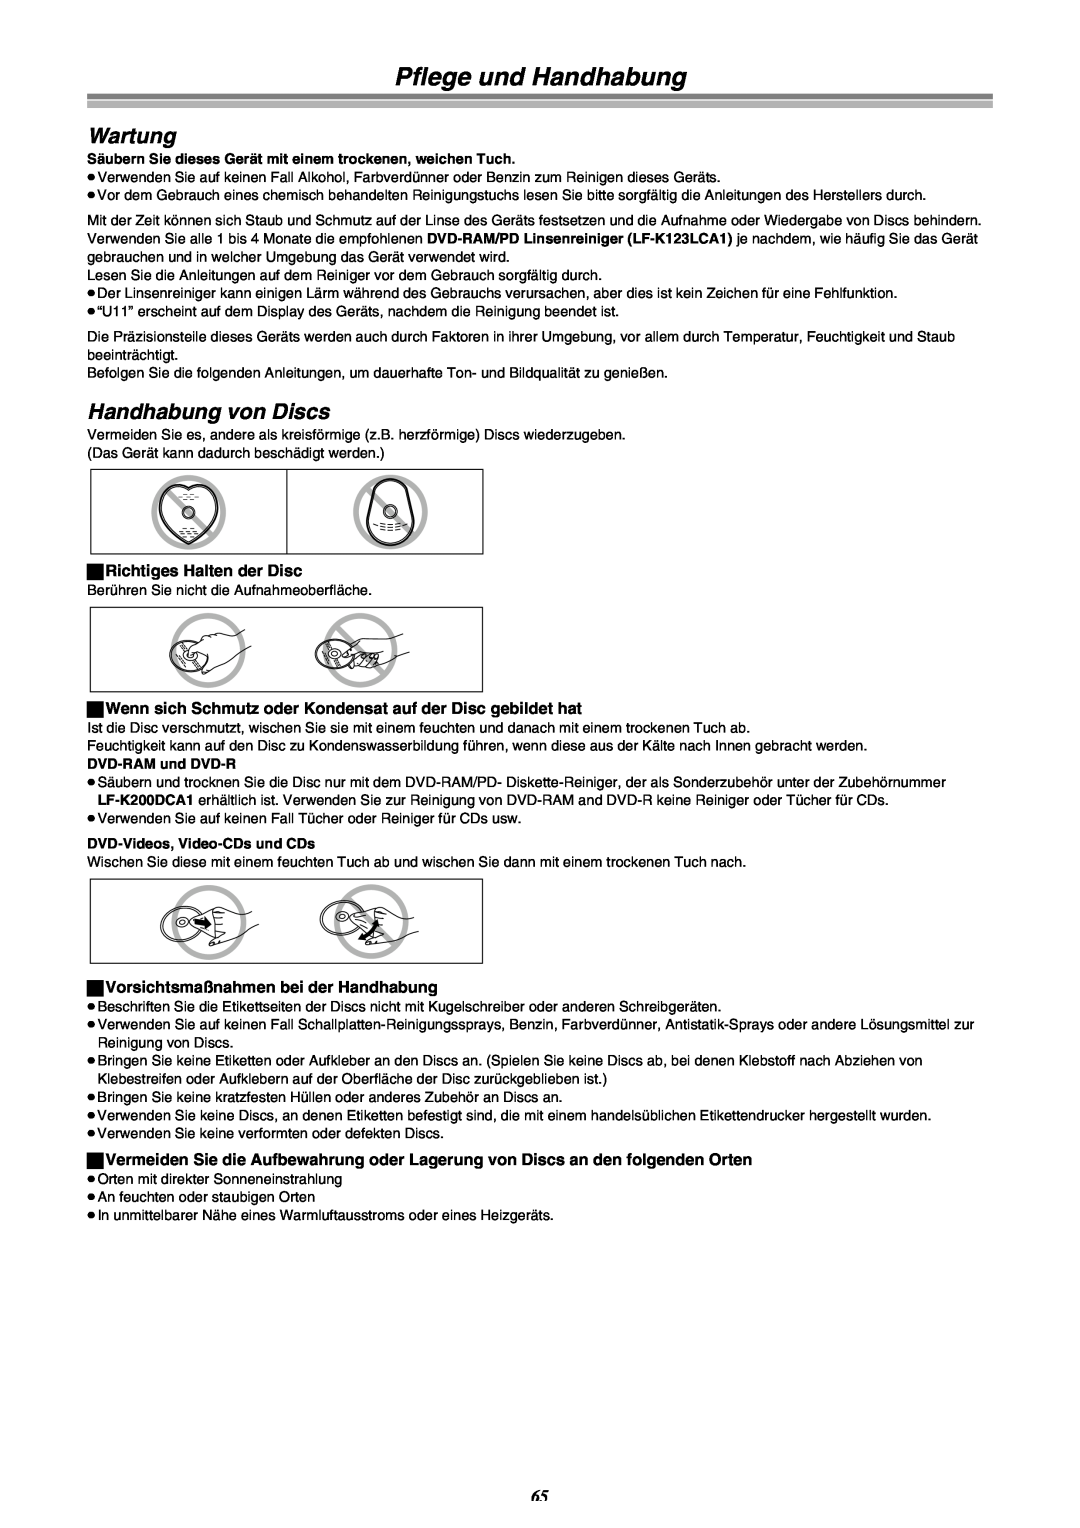 Panasonic DMR-E30 manual Pflege und Handhabung, Wartung, Handhabung von Discs 